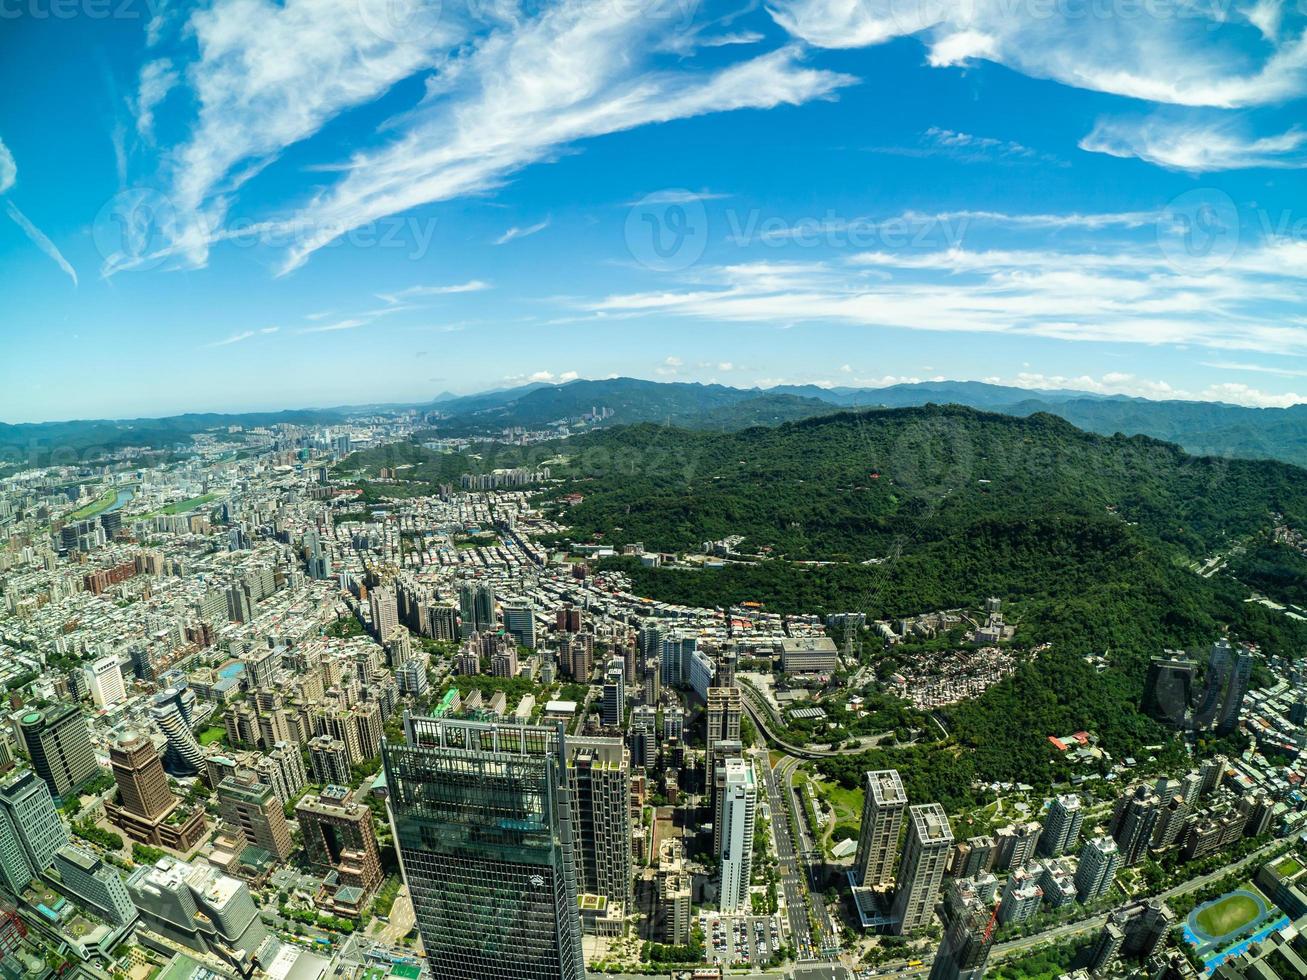 veduta aerea di taipei a taiwan foto